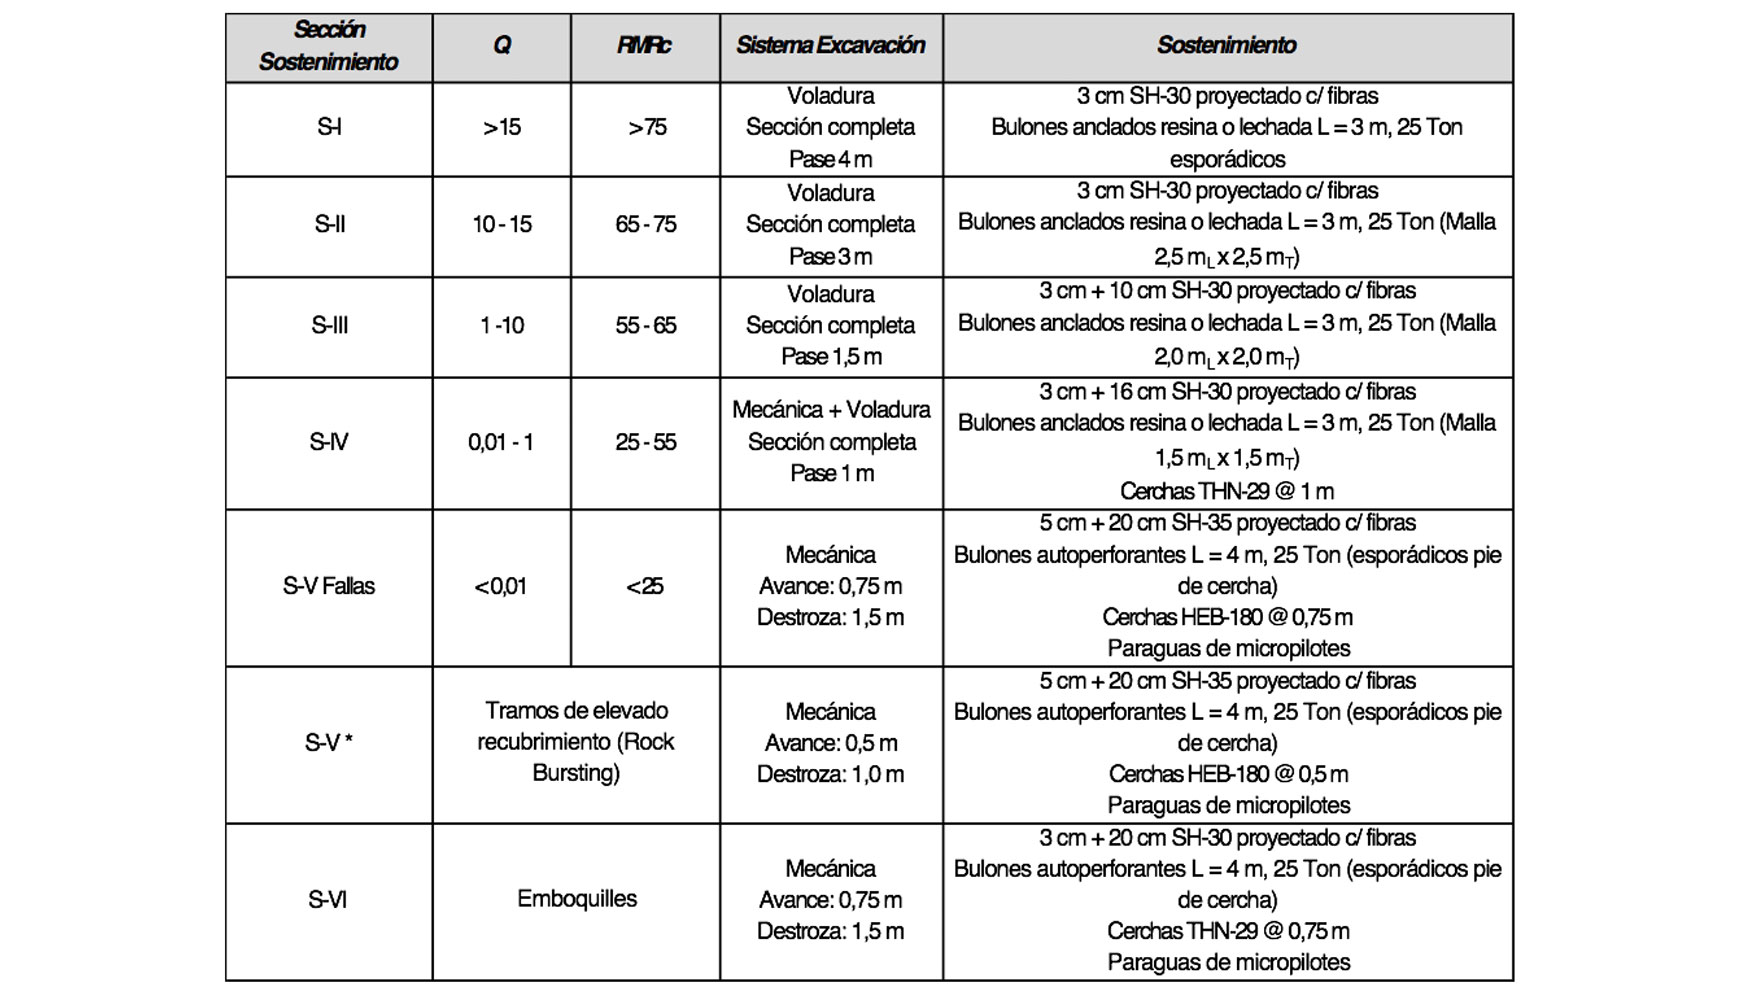 Sostenimientos propuestos para el tnel Caleta Gonzalo (Fuente: elaboracin propia)